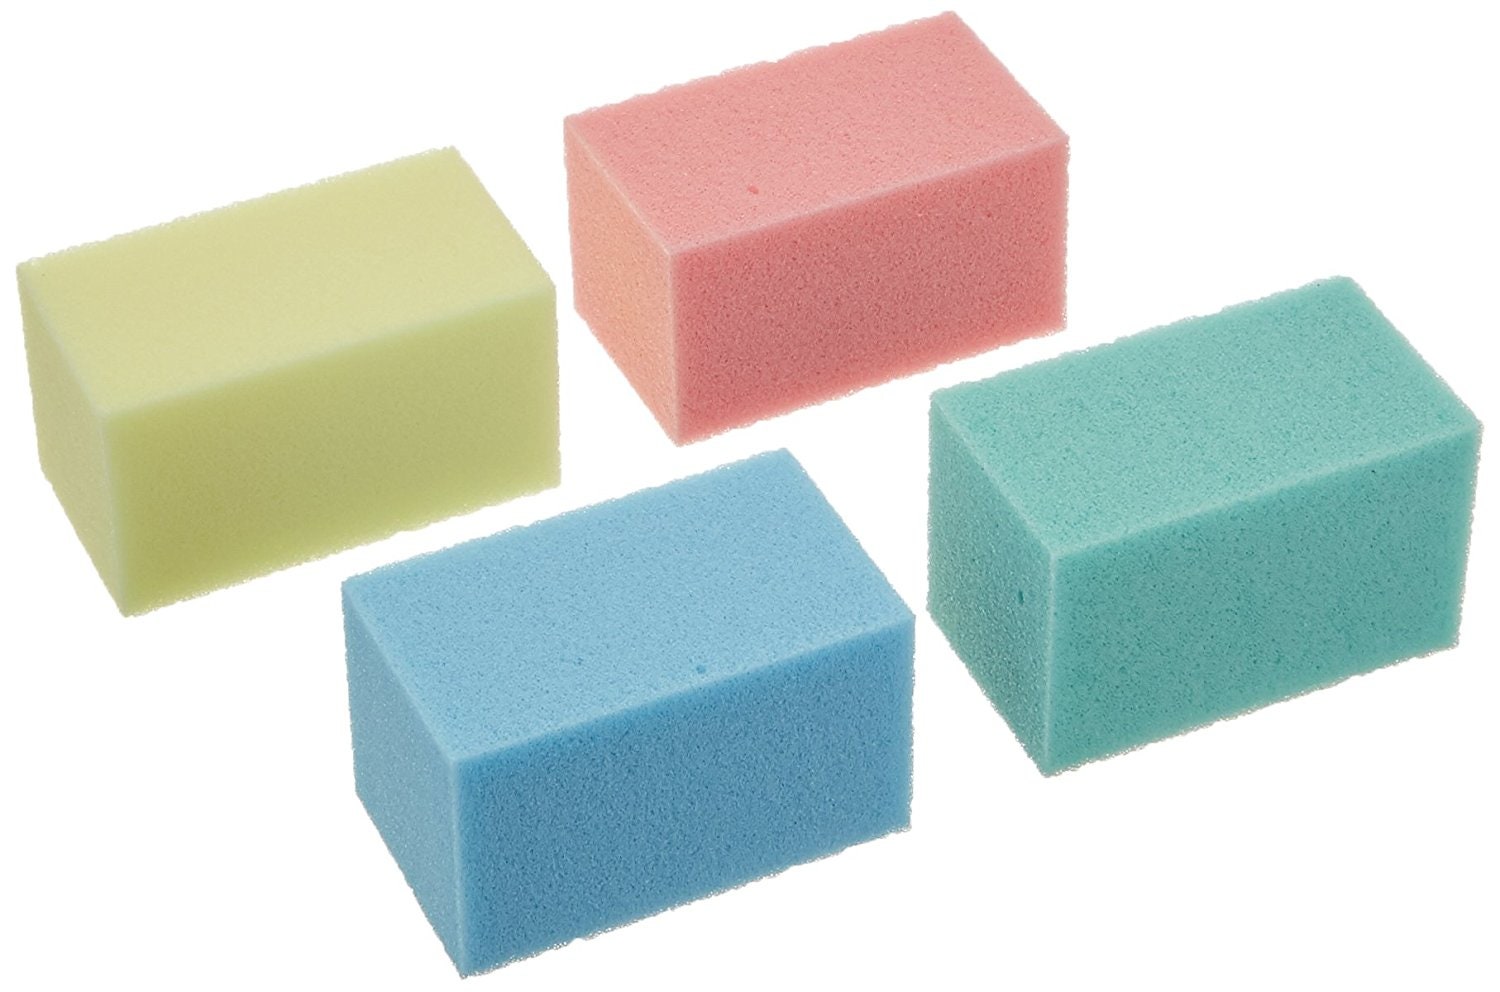 sponge foam blocks